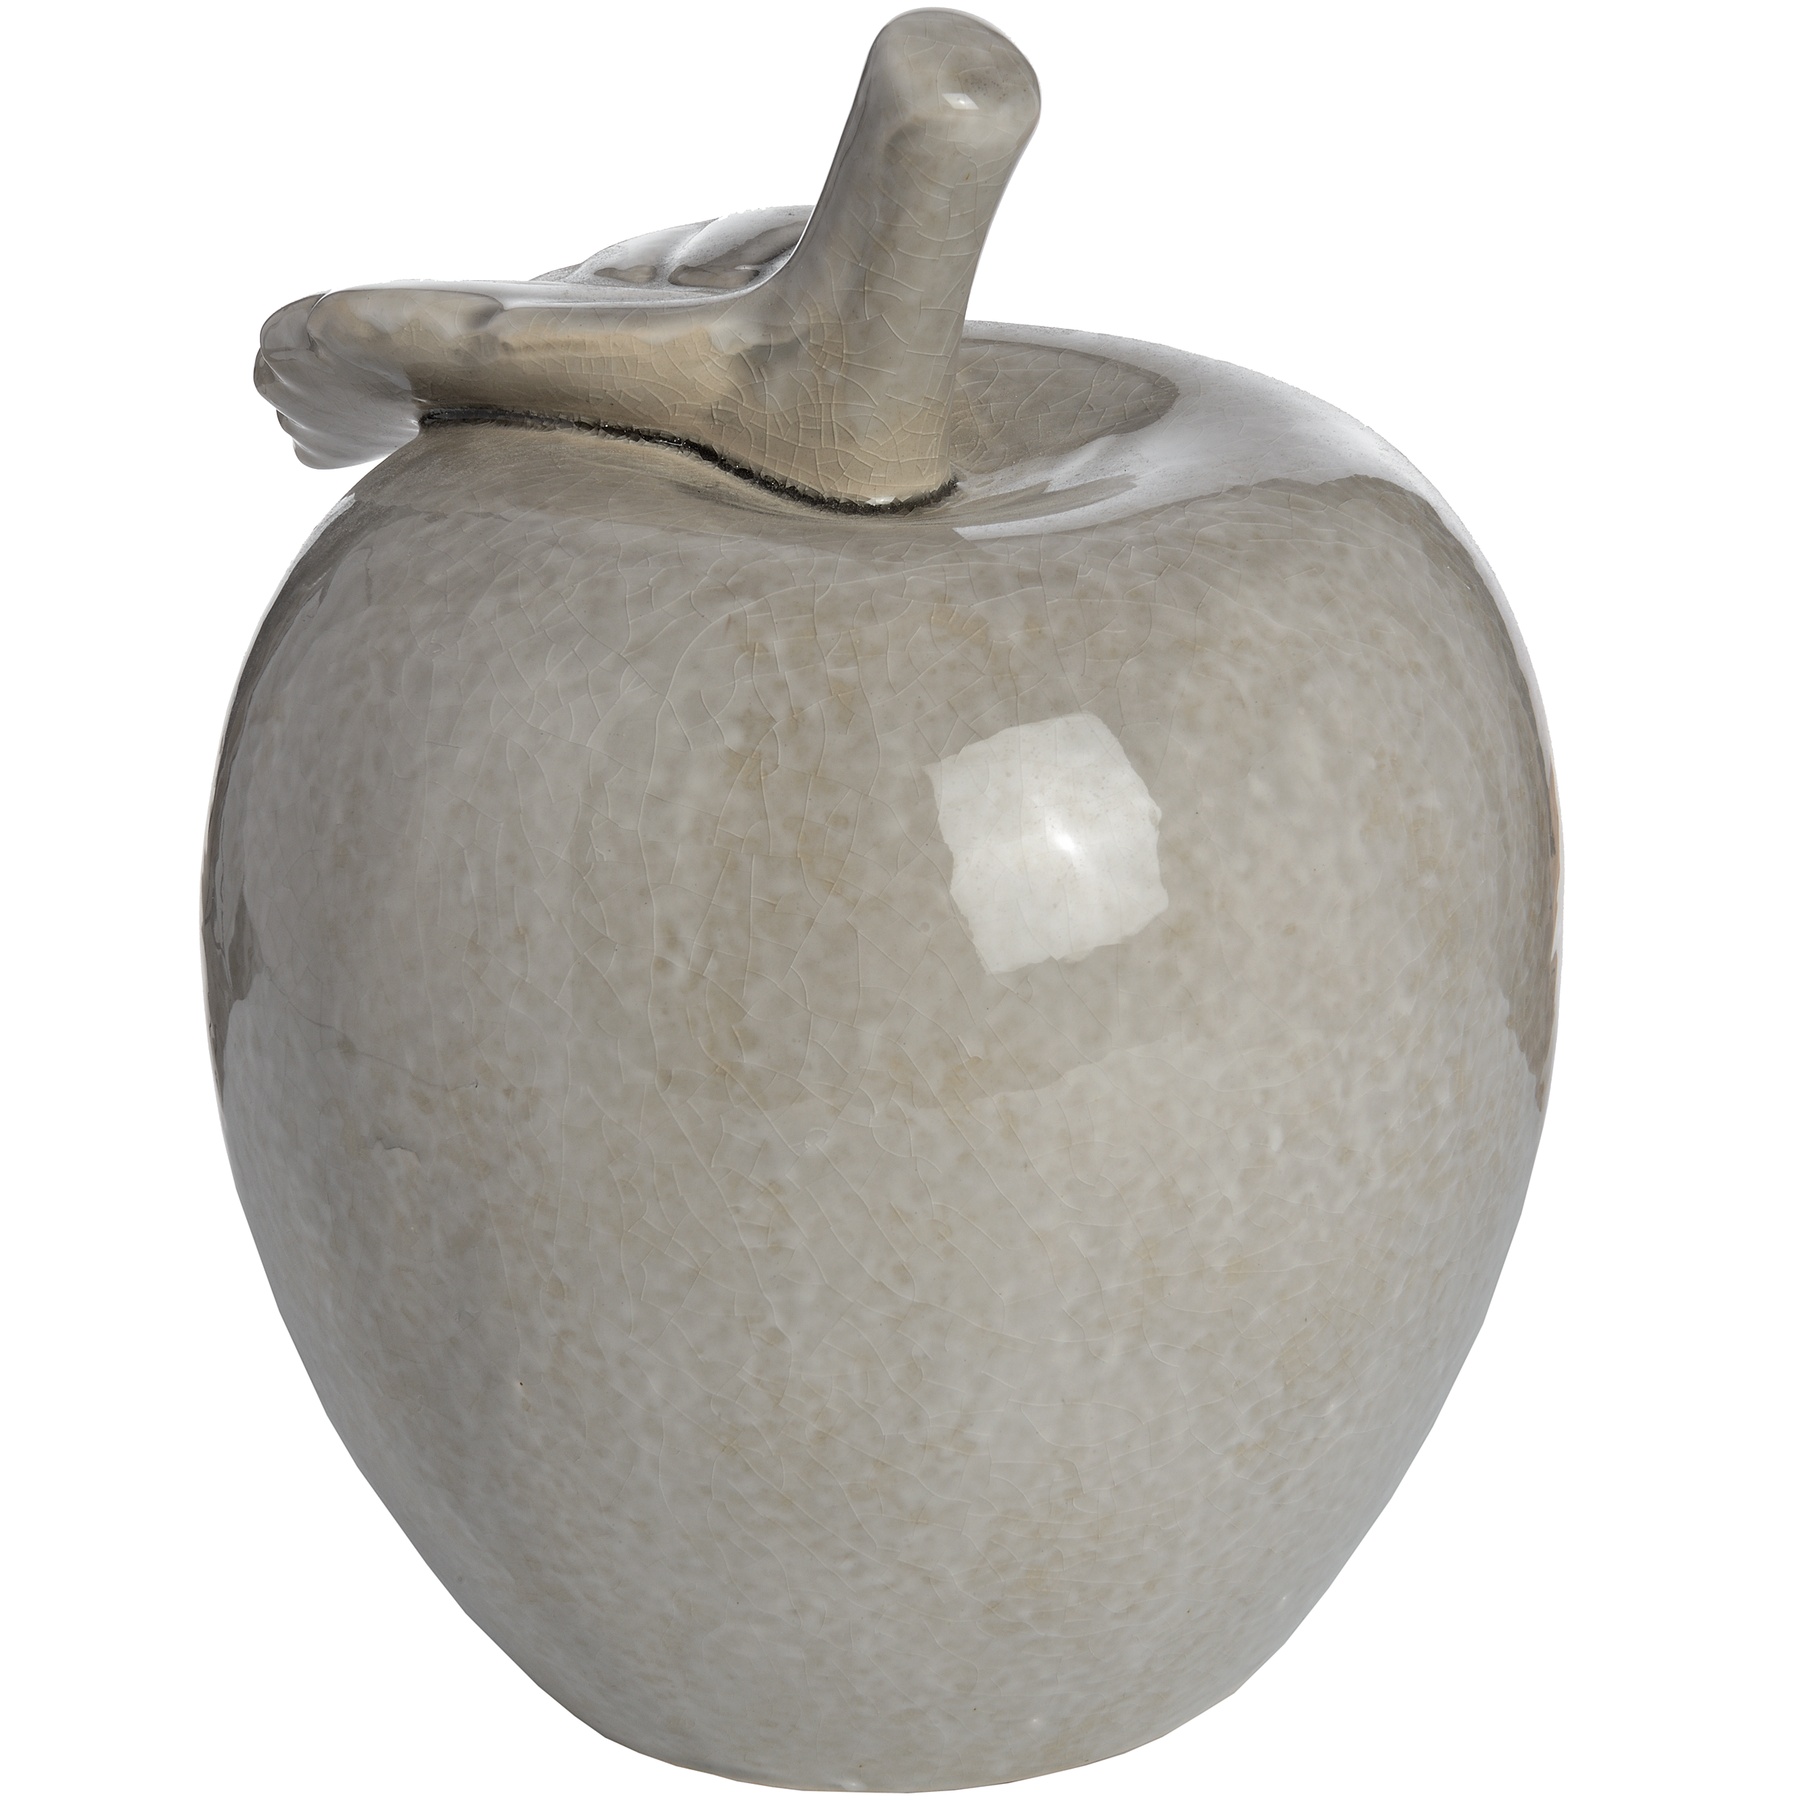 Antique Grey Large Ceramic Apple - Image 2